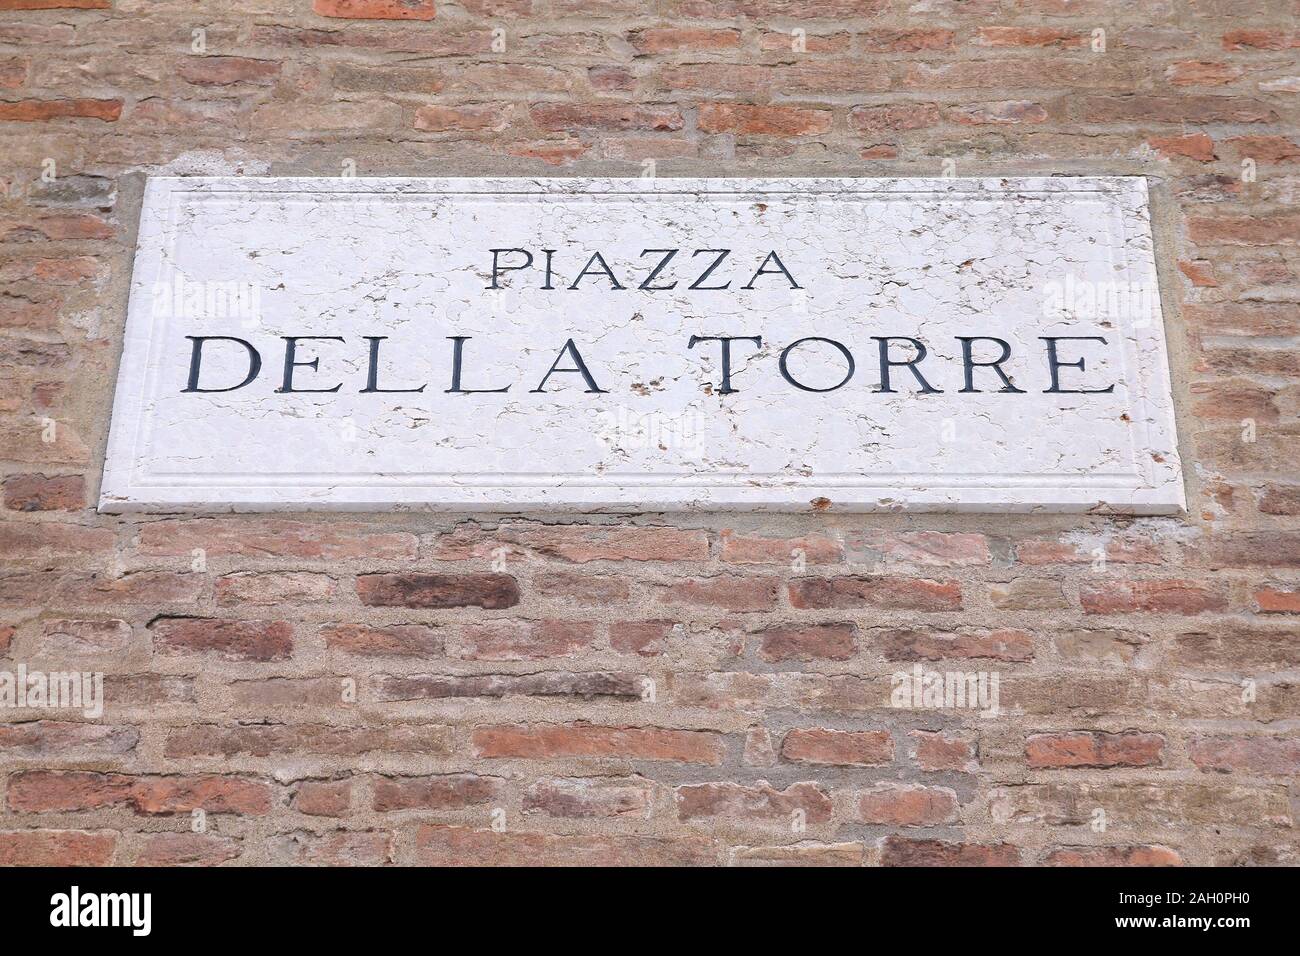 Modena, Italy - Emilia-Romagna region. Square name sign - Piazza Della Torre. Stock Photo